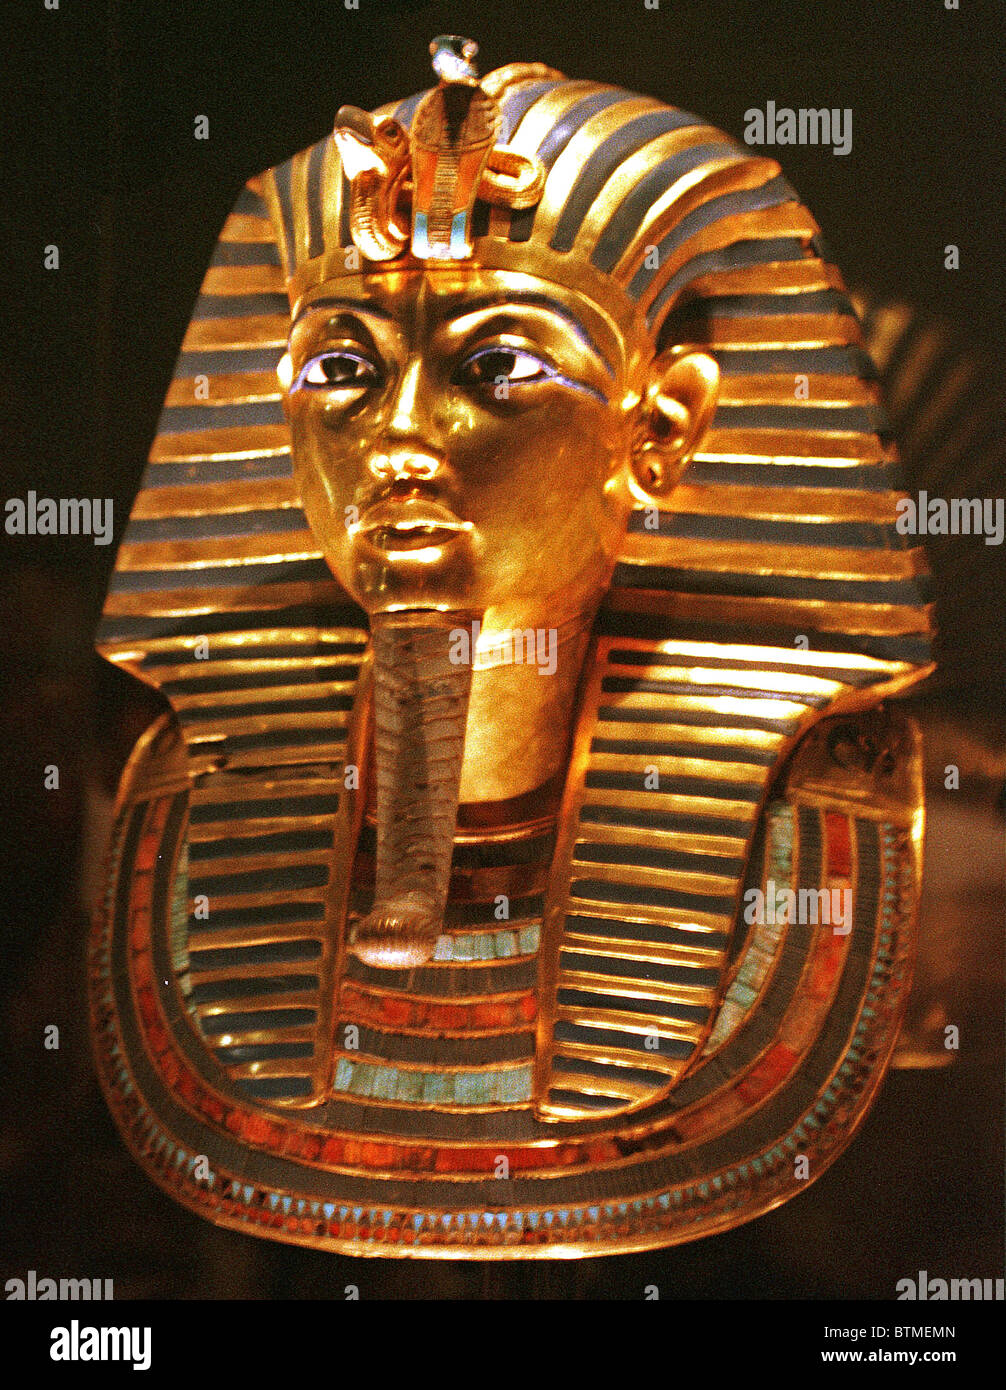 Le masque de la mort de Toutankhamon pharaon égyptien est en or incrusté de verre coloré et pierre semi-précieuse. À partir de l'image numérisée dans le matériel d'archive Portrait Presse Service (anciennement Bureau Portrait Presse) Banque D'Images